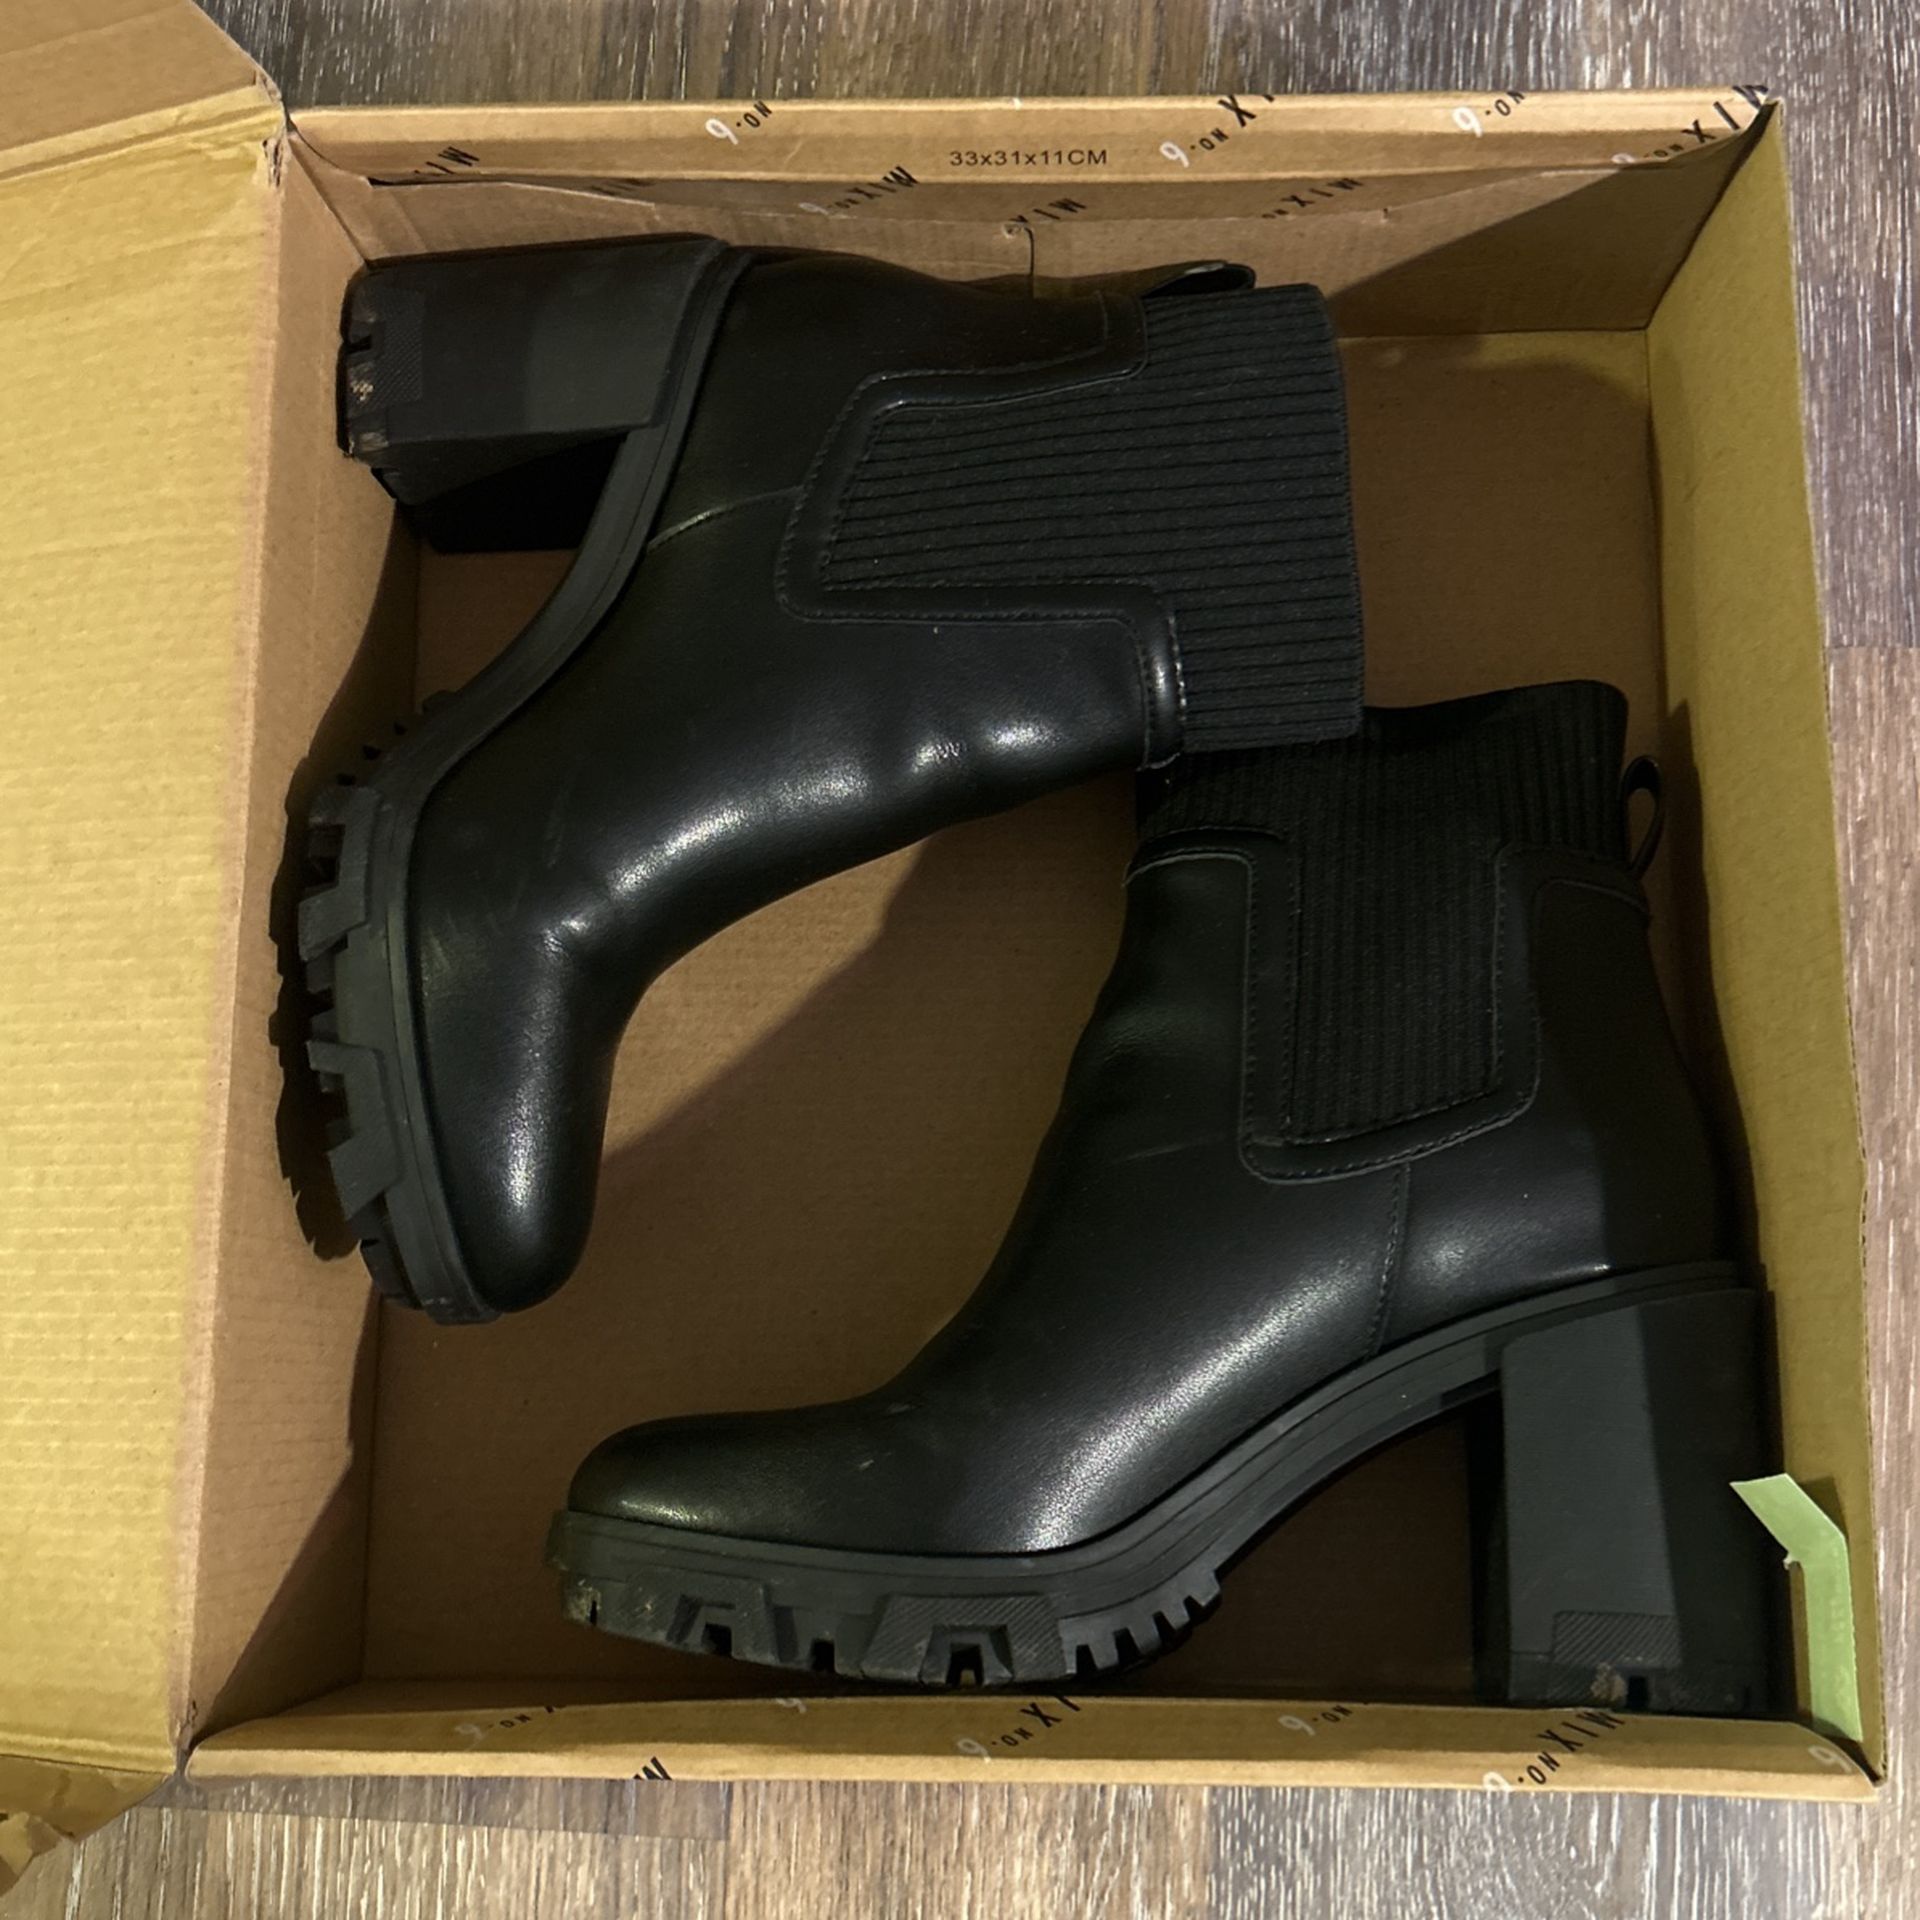 Size 8 Women’s Boots (black)